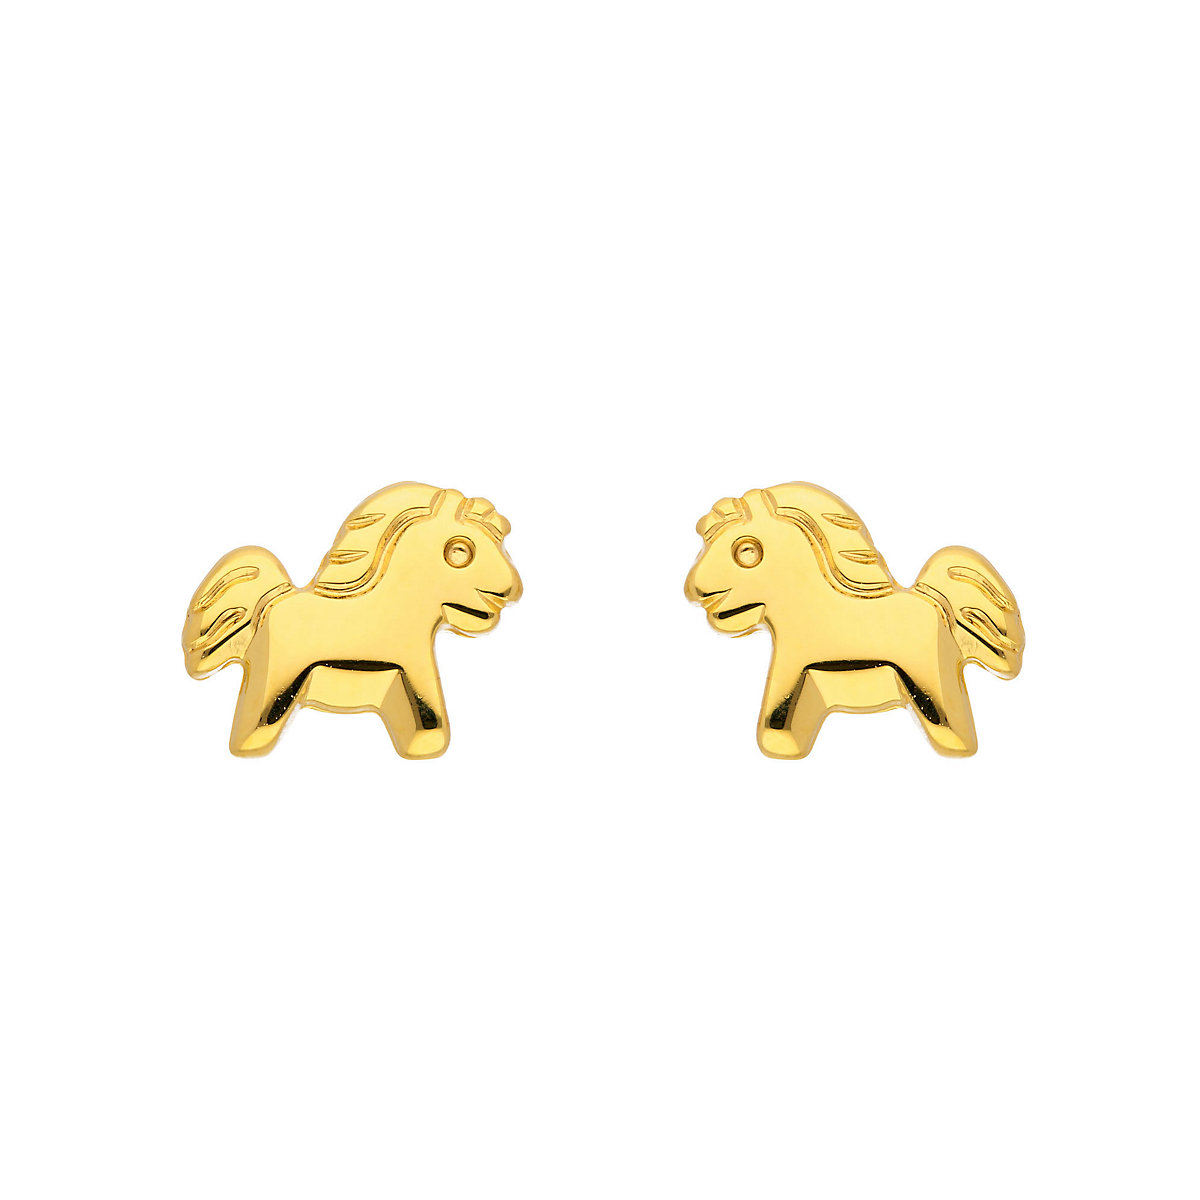 1 Paar hübsche Pferde Pony Kinder Ohrstecker Ohrringe aus Echt Gold 585 14 KT